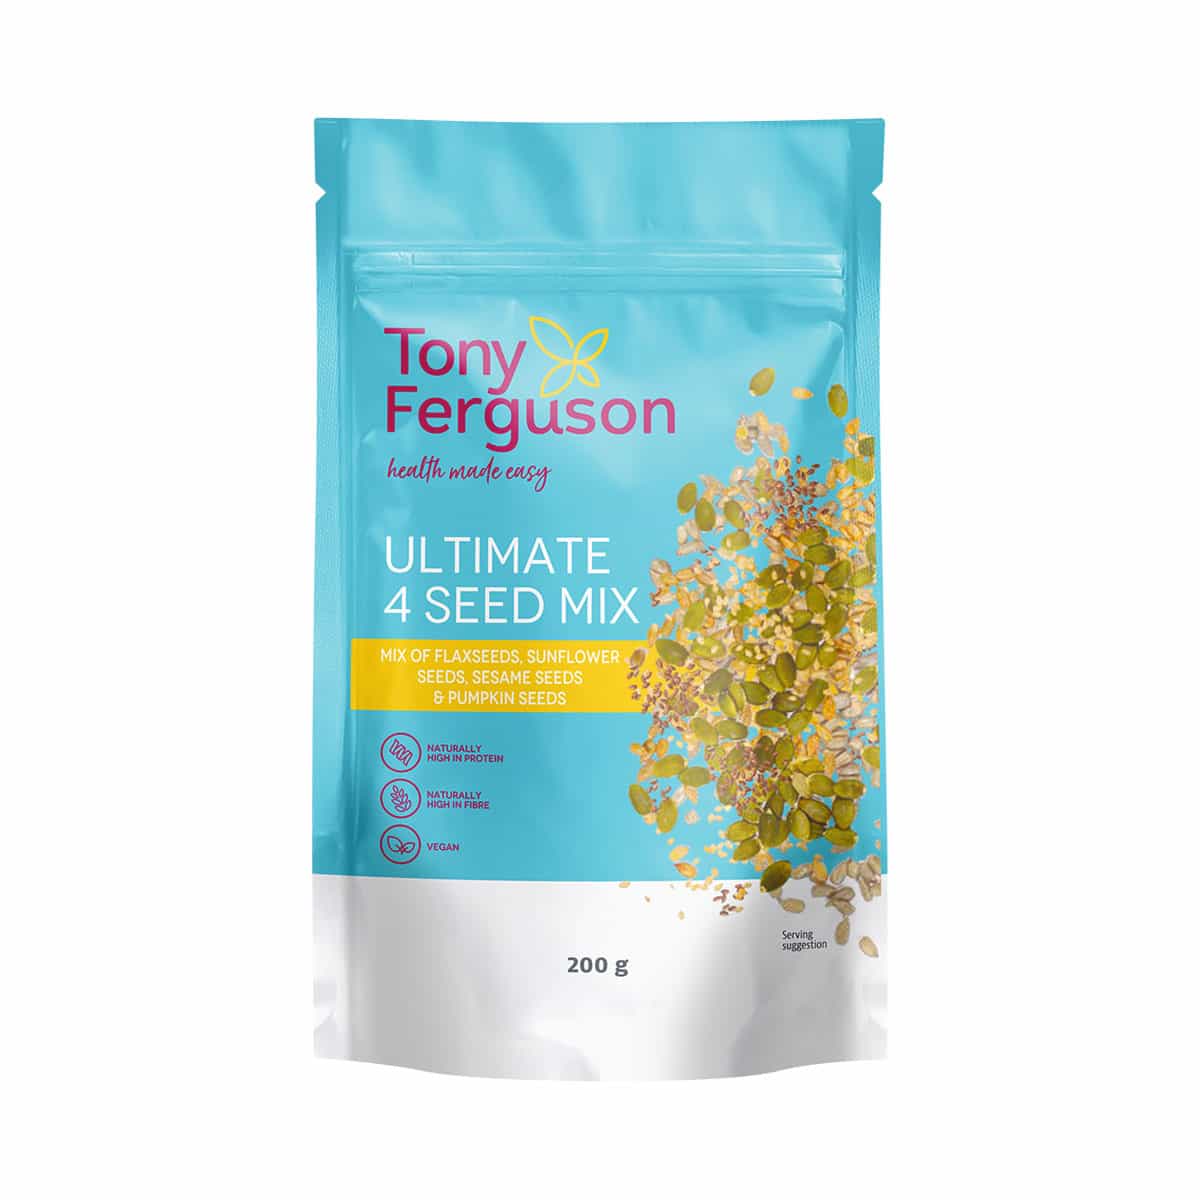 Tony Ferguson Ultimate 4 Seed Mix - 200g